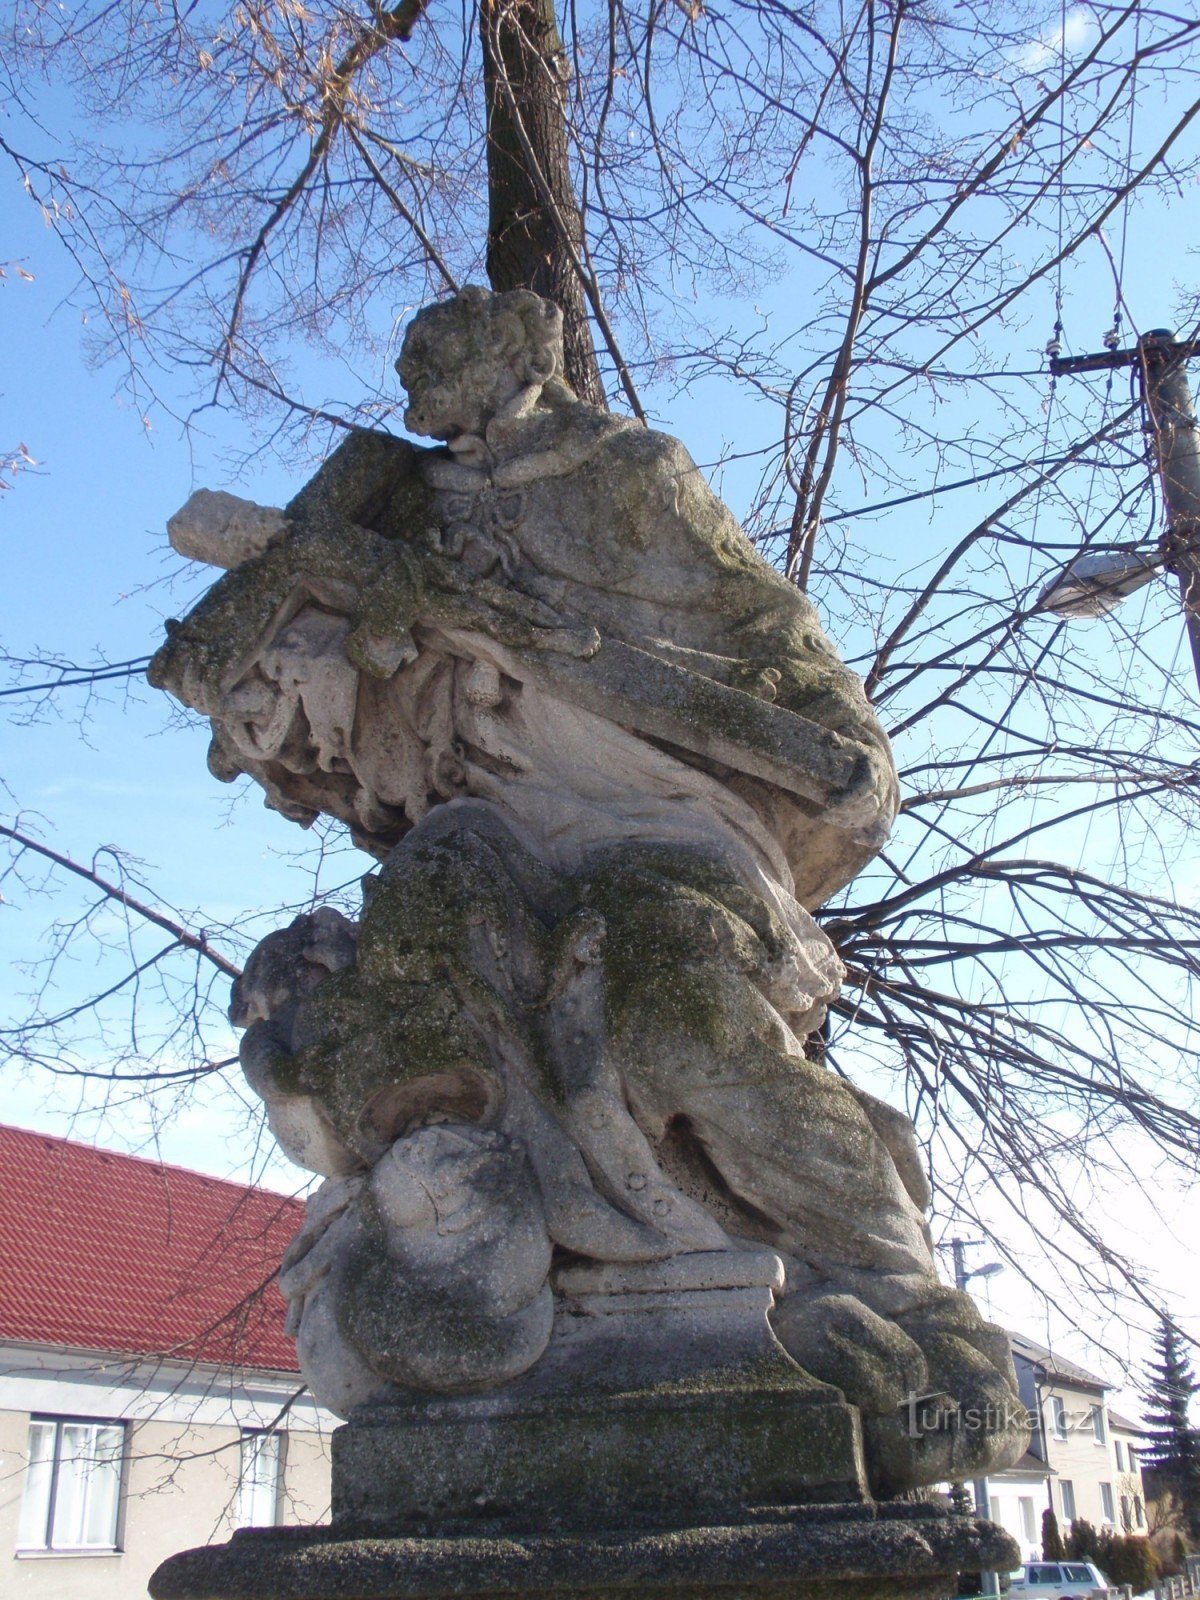 Strítež - statue of St. Jan Nepomucký